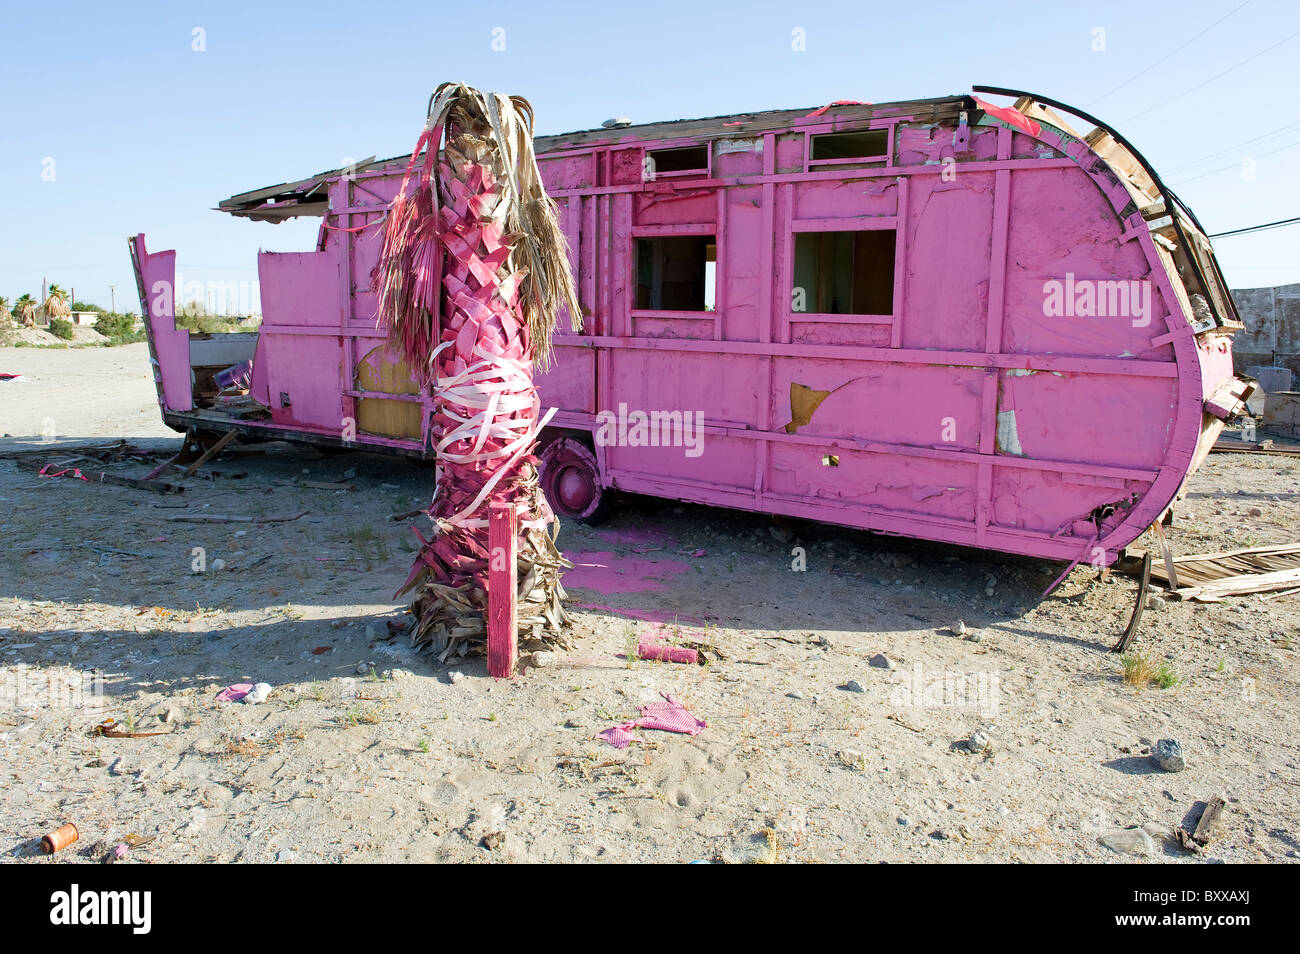 Derelict pink trailer/Caravan on the shores of the Salton Sea, Salton Sea Beach, Southern California USA Stock Photo